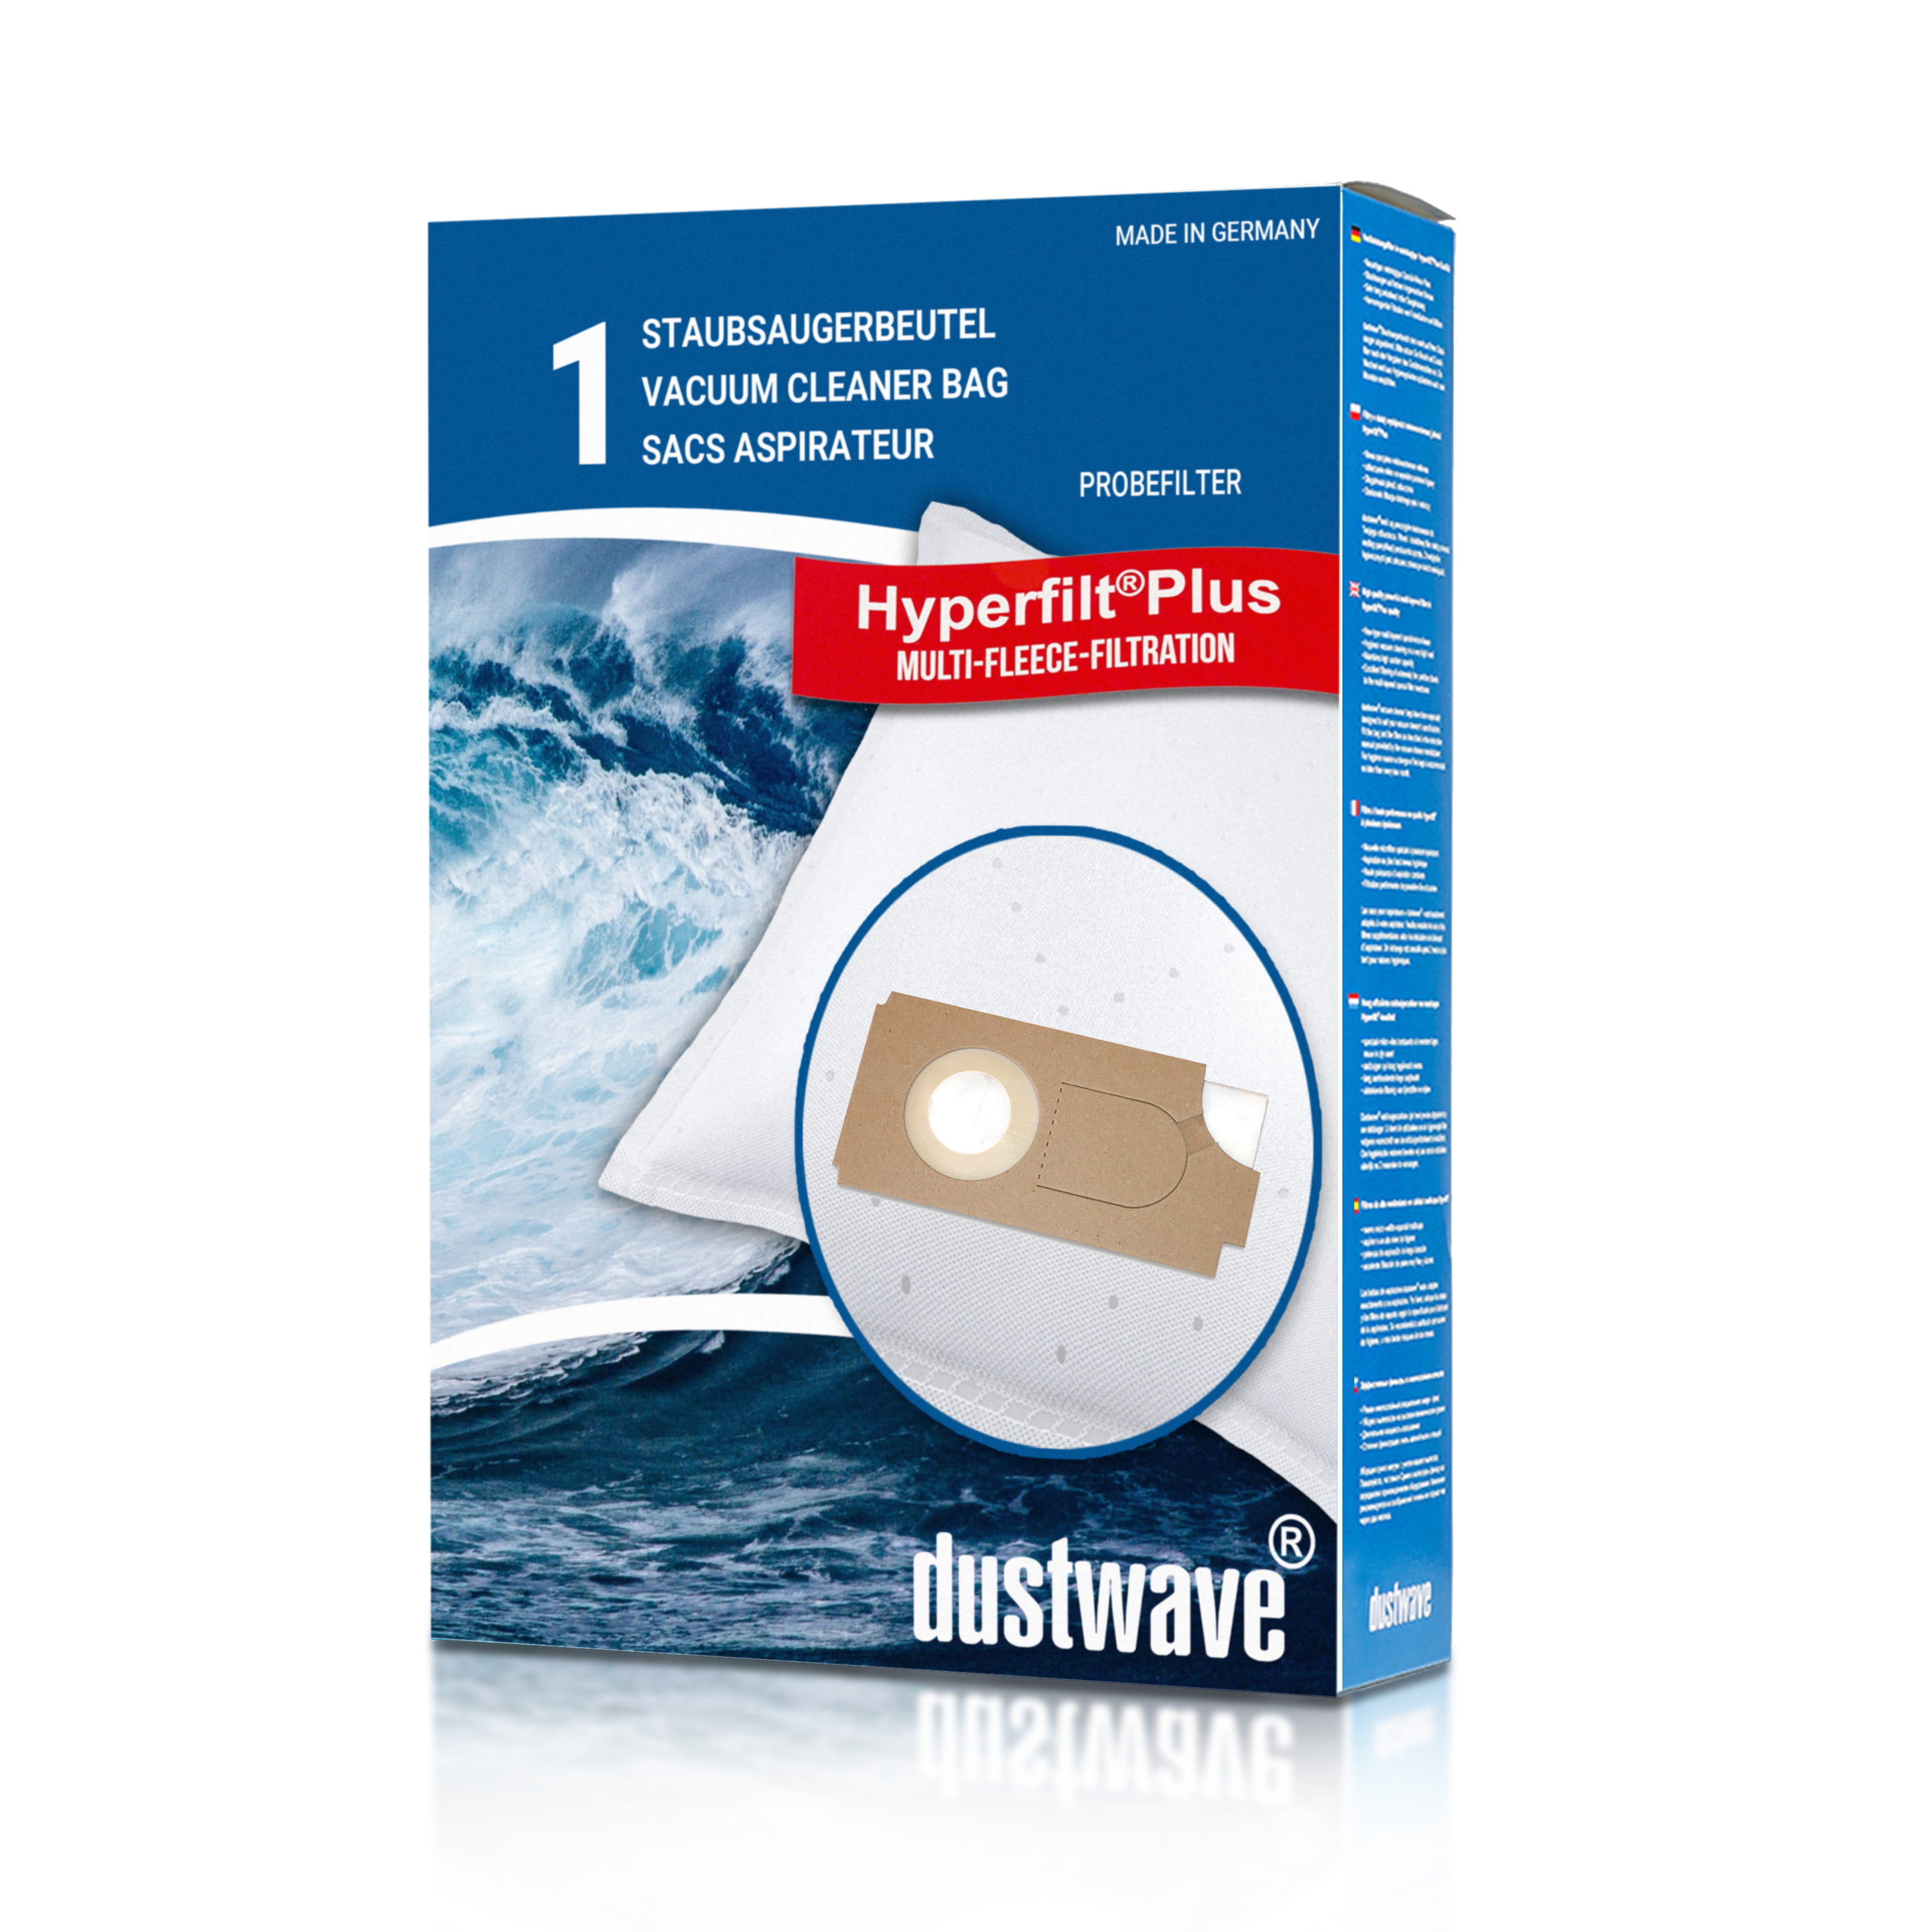 Dustwave® 1 Staubsaugerbeutel für Columbus TK 36e / TK36e - hocheffizient mit Hygieneverschluss - Made in Germany